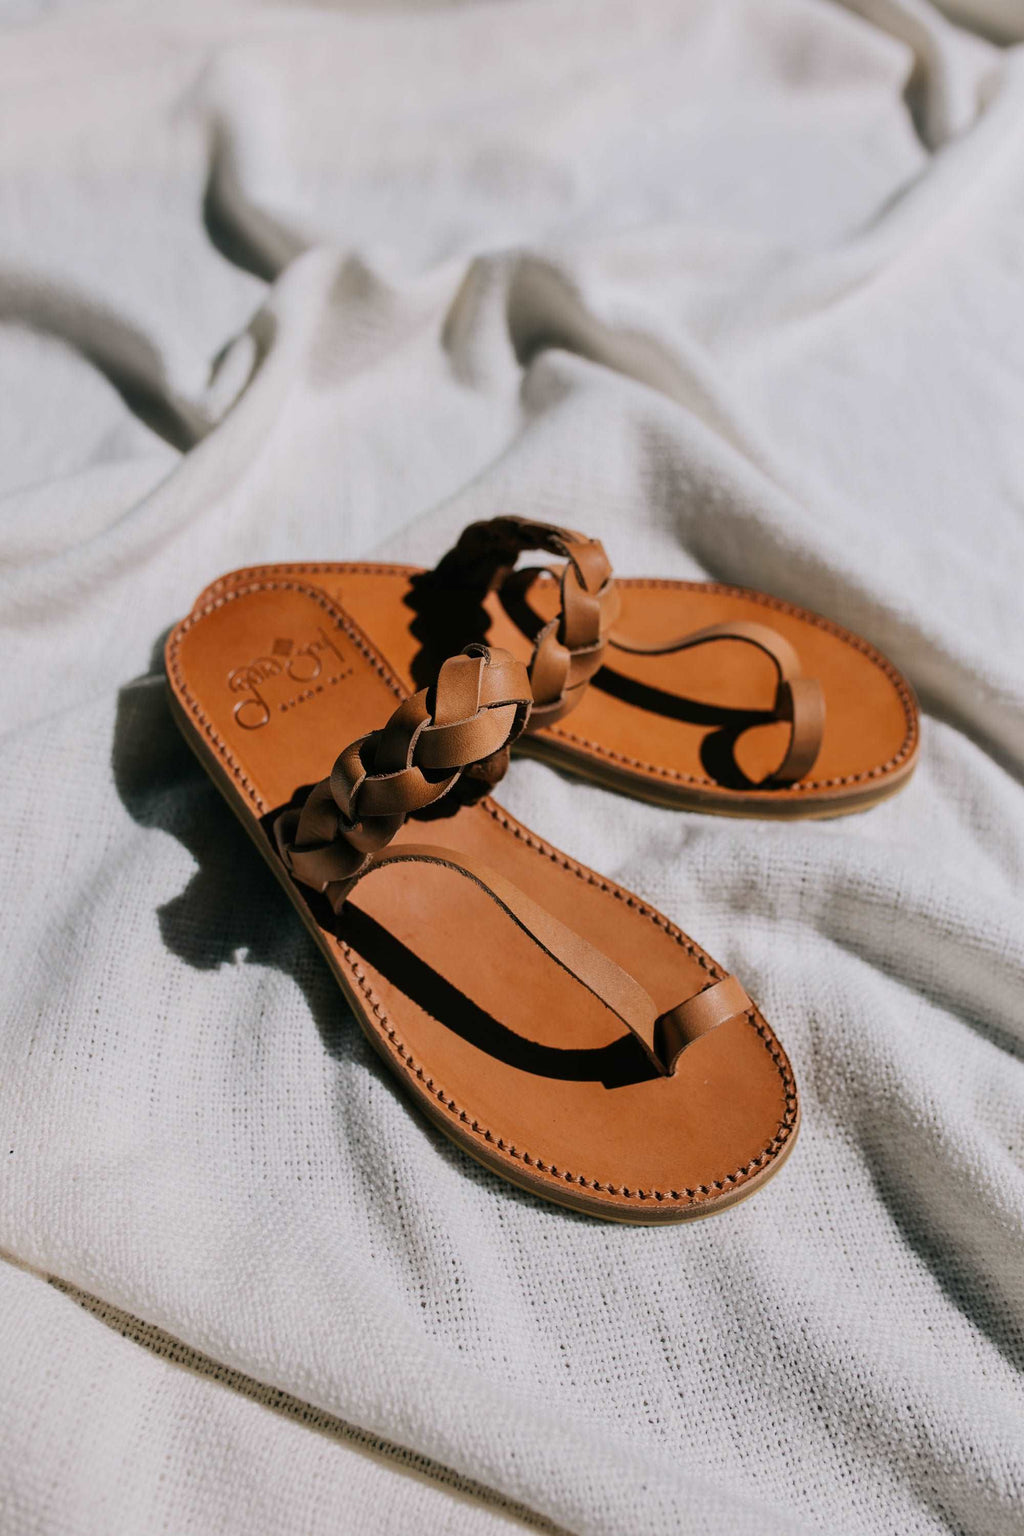 Venice Sandals Tan Leather | Women sandals online